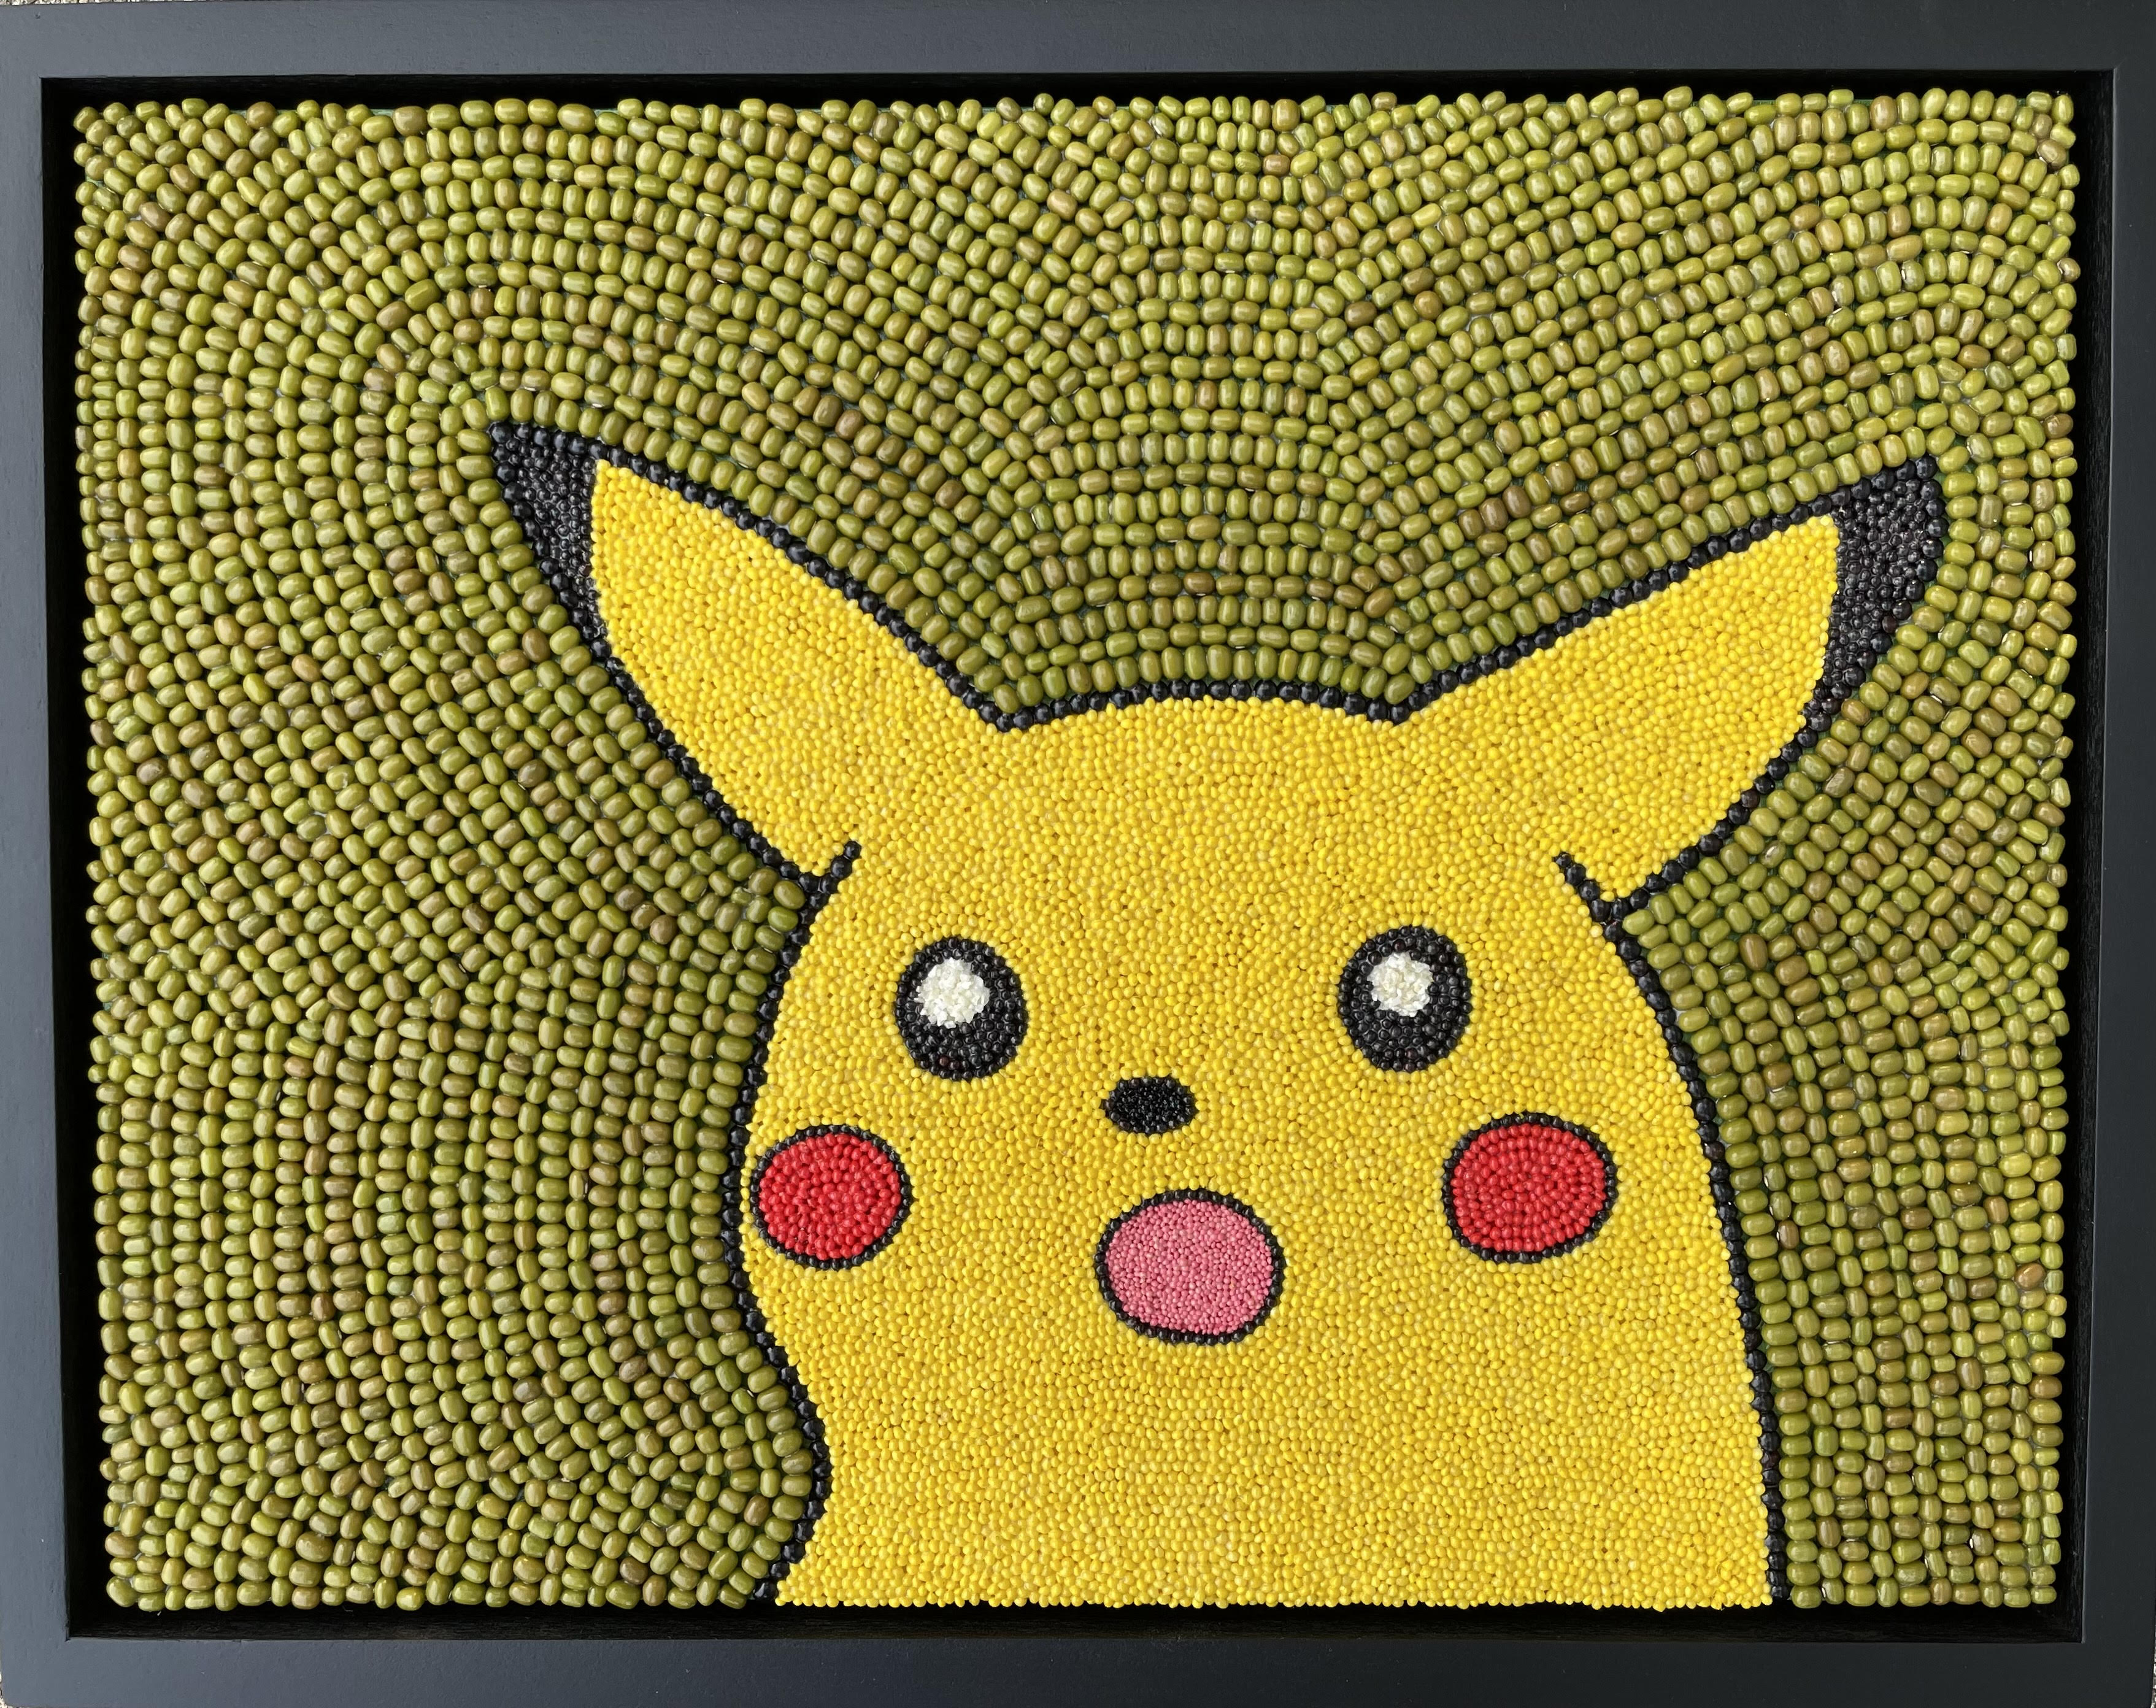 [Gayle Deutsch Surprised Pikachu image]